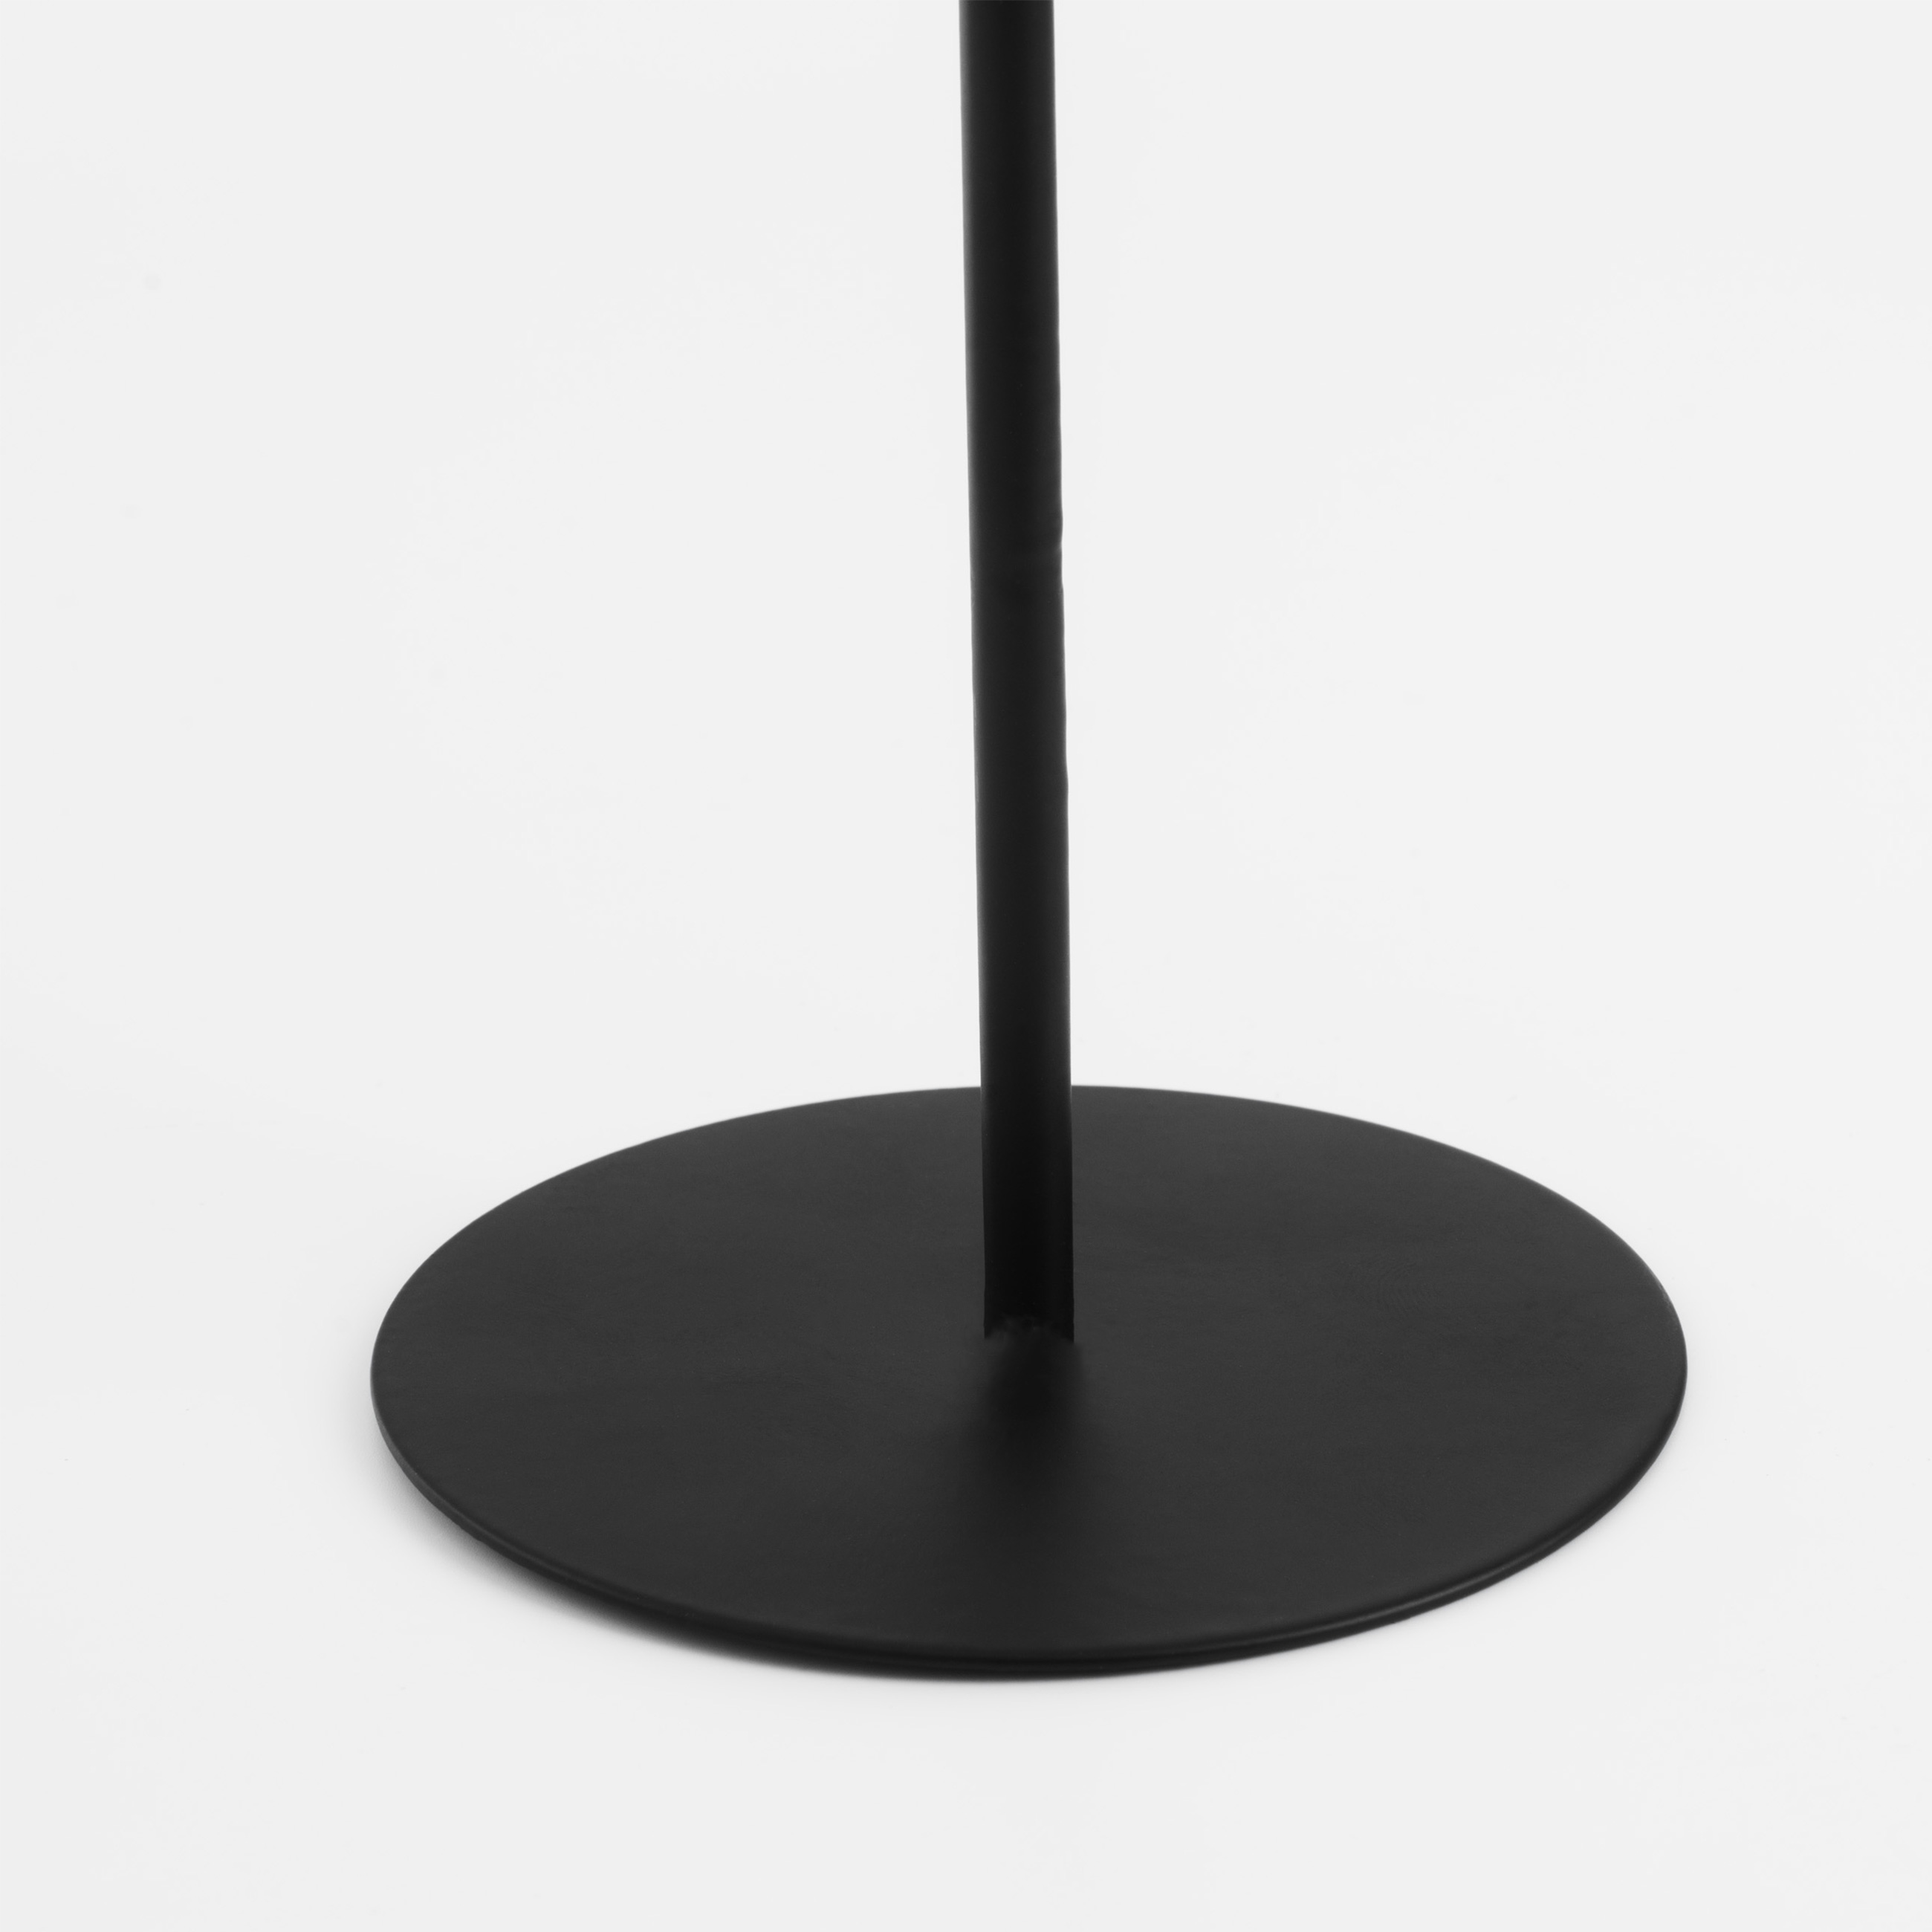 Подсвечник, 15 см, для тонкой свечи, на ножке, металл, черный, Black style изображение № 4